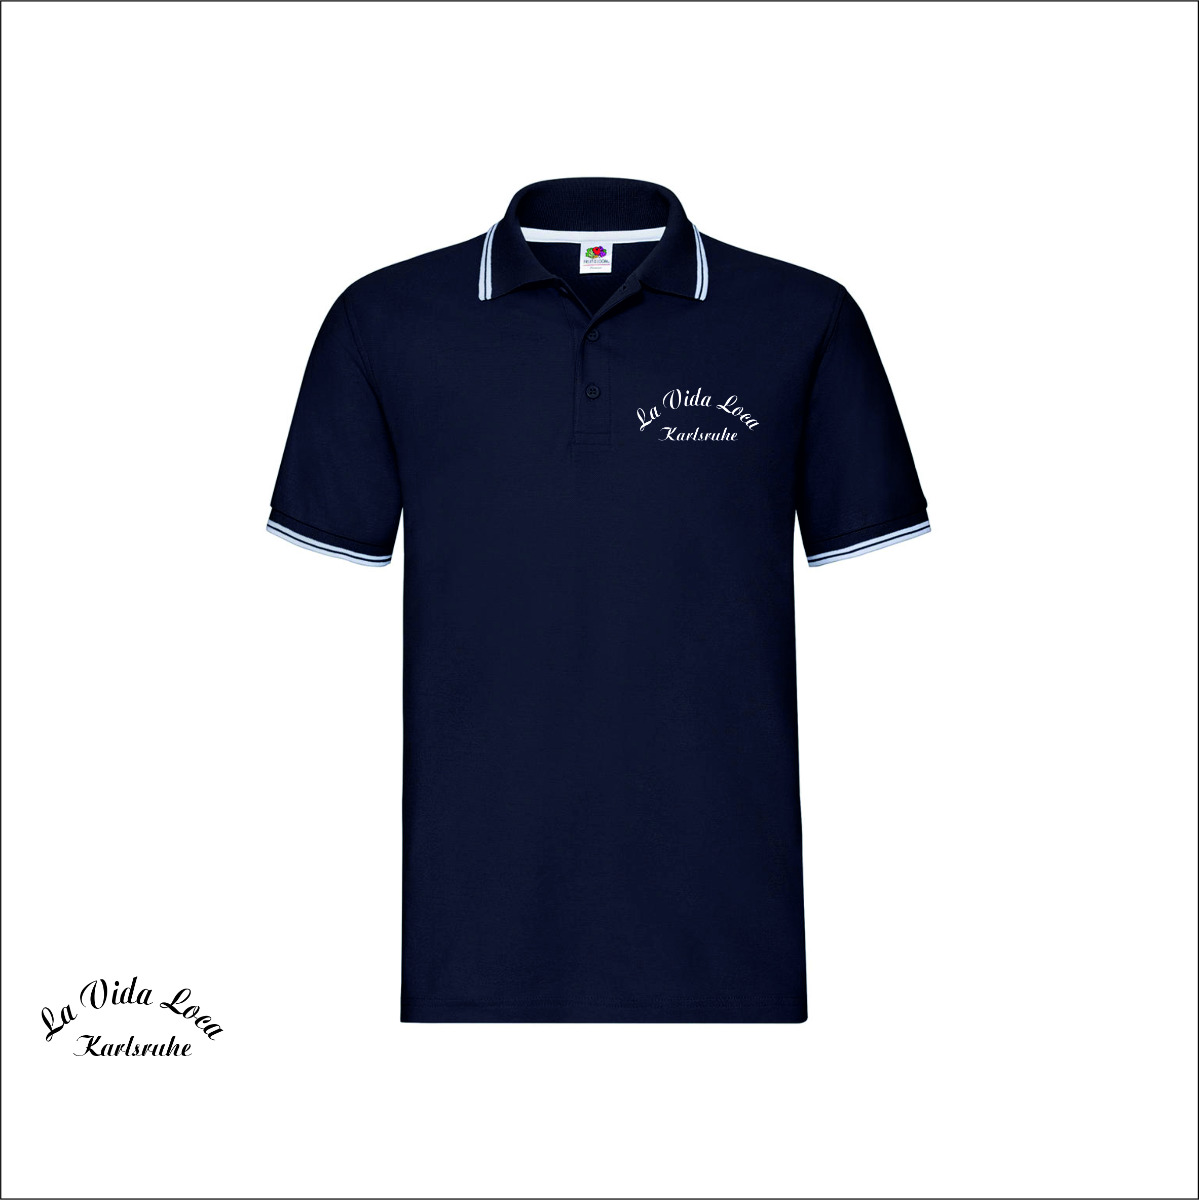 Besticktes Polo-Shirt "La Vida Loca Karlsruhe" Schriftzug, navy/weiß